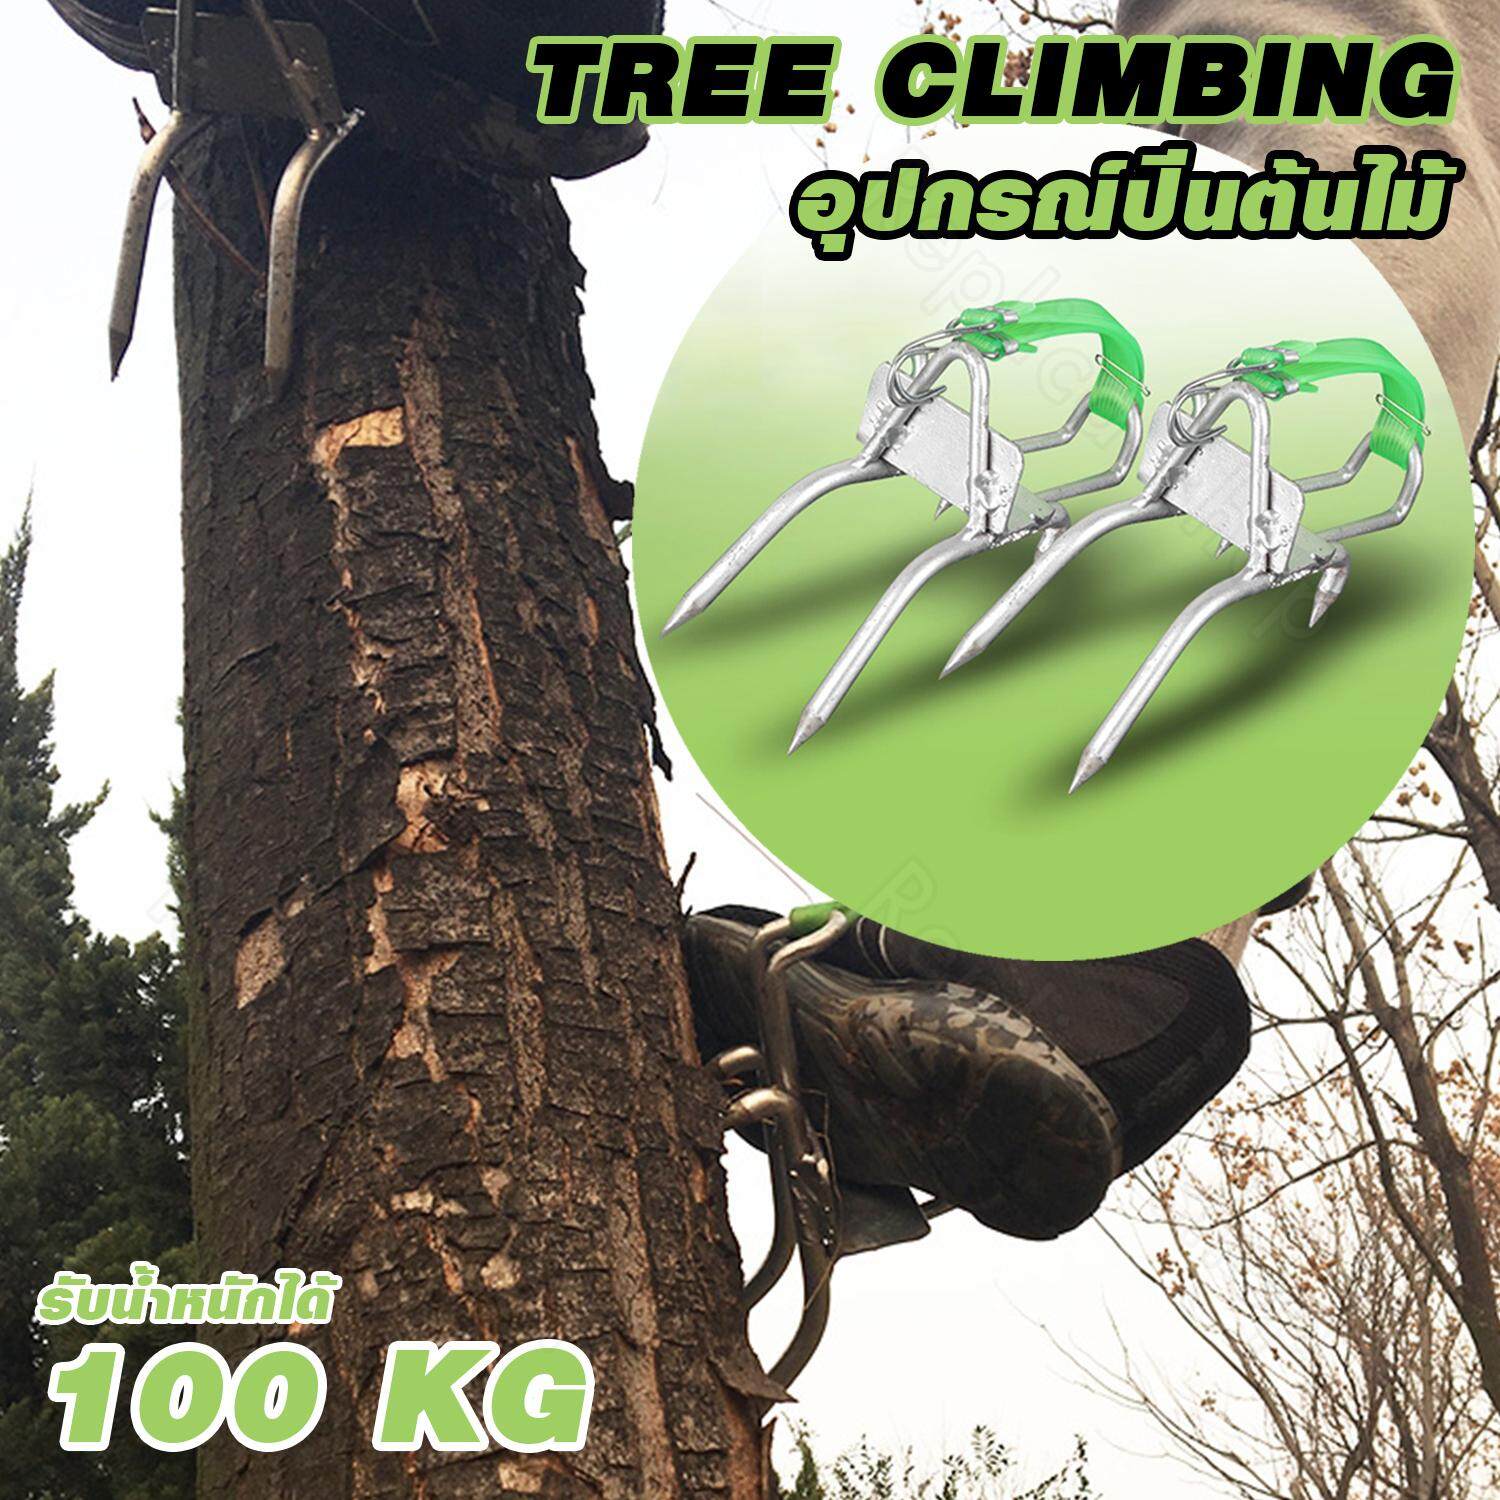 Replica shop อุปกรณ์ปีนต้นไม้ Tree Climbing ที่ปีนต้นไม้ ปีนต้นไม้ รุ่น JC-1106